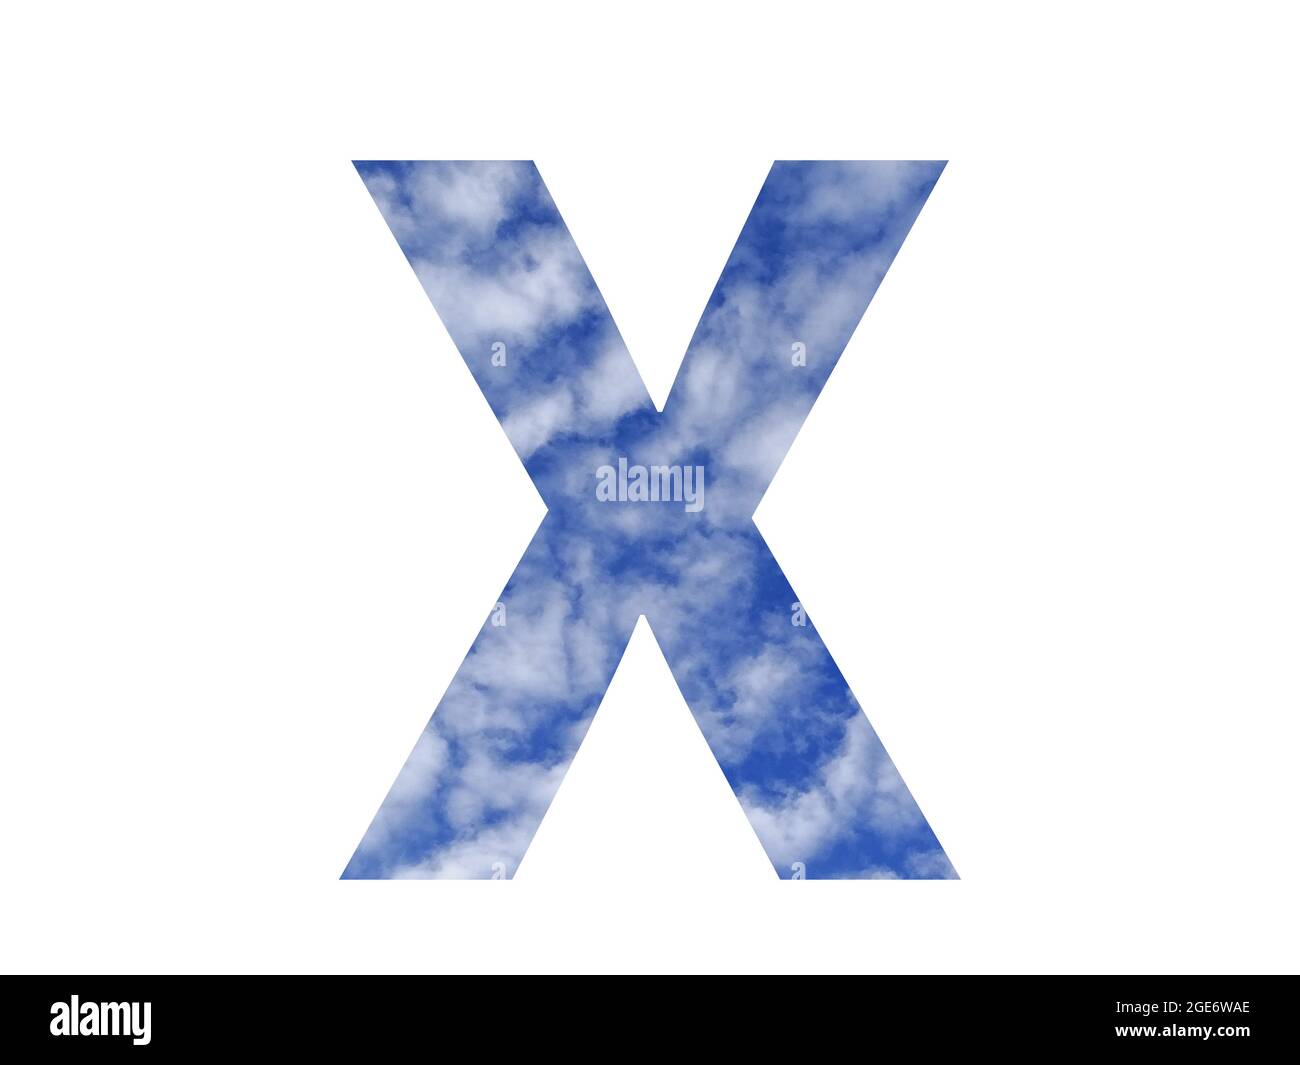 Lettera X dell'alfabeto fatto con cielo blu e nuvole bianche, isolato su sfondo bianco Foto Stock